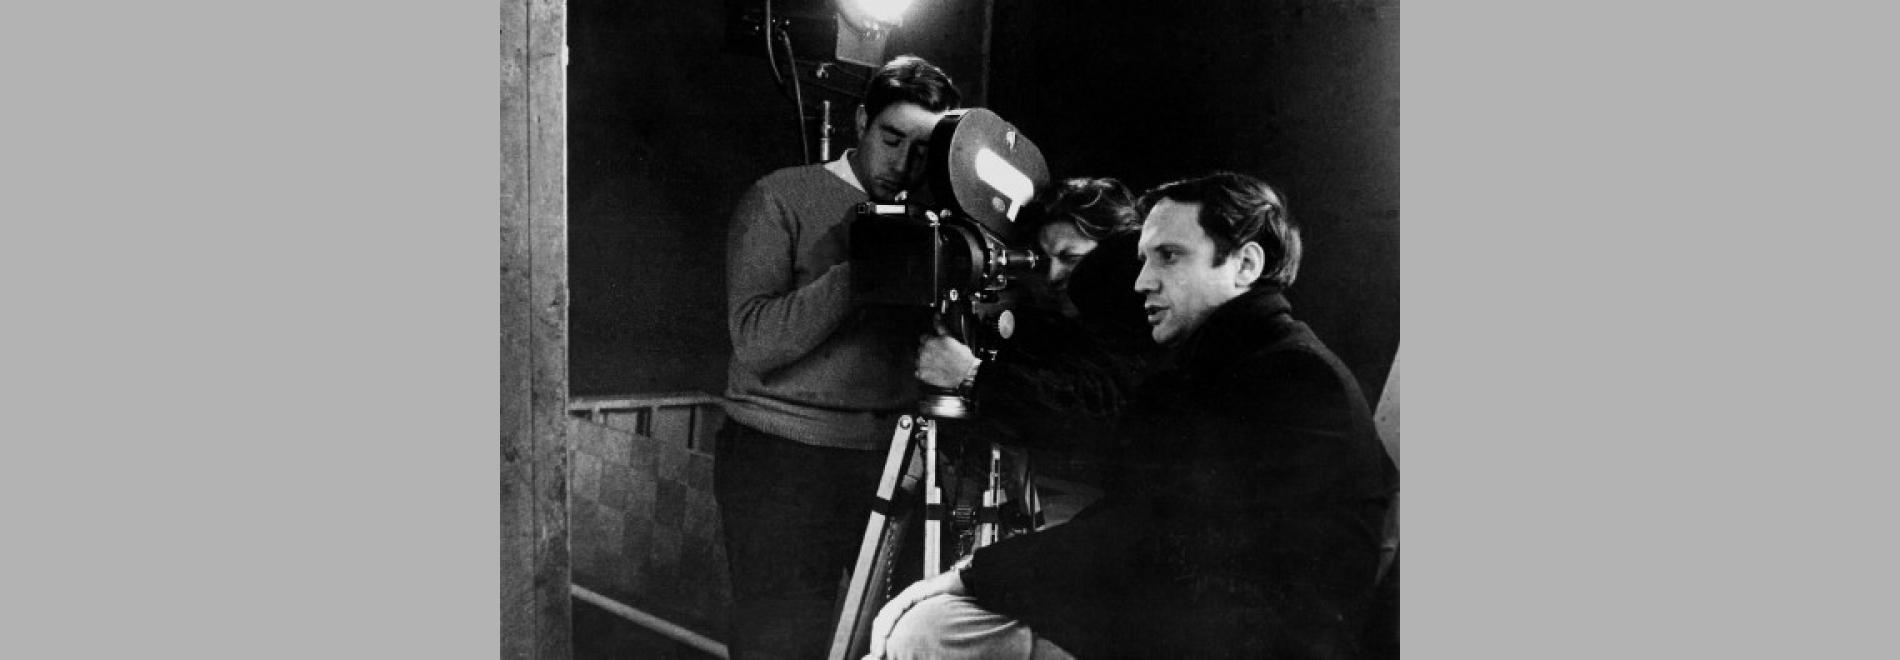 Pere Portabella durant el rodatge de 'Nocturn 1968'